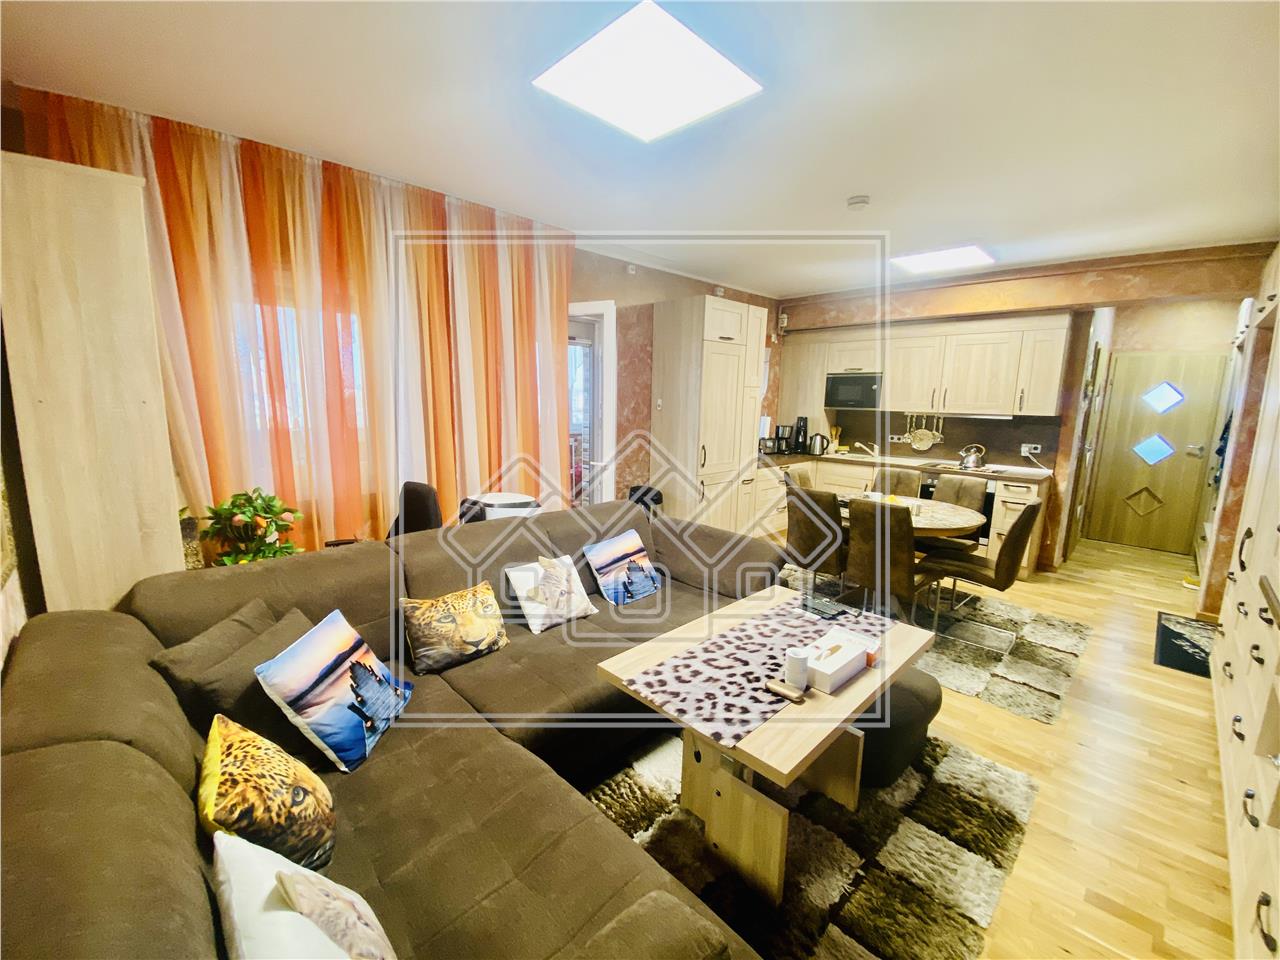 Apartament de vanzare in Sibiu - 2 camere si balcon - Selimbar